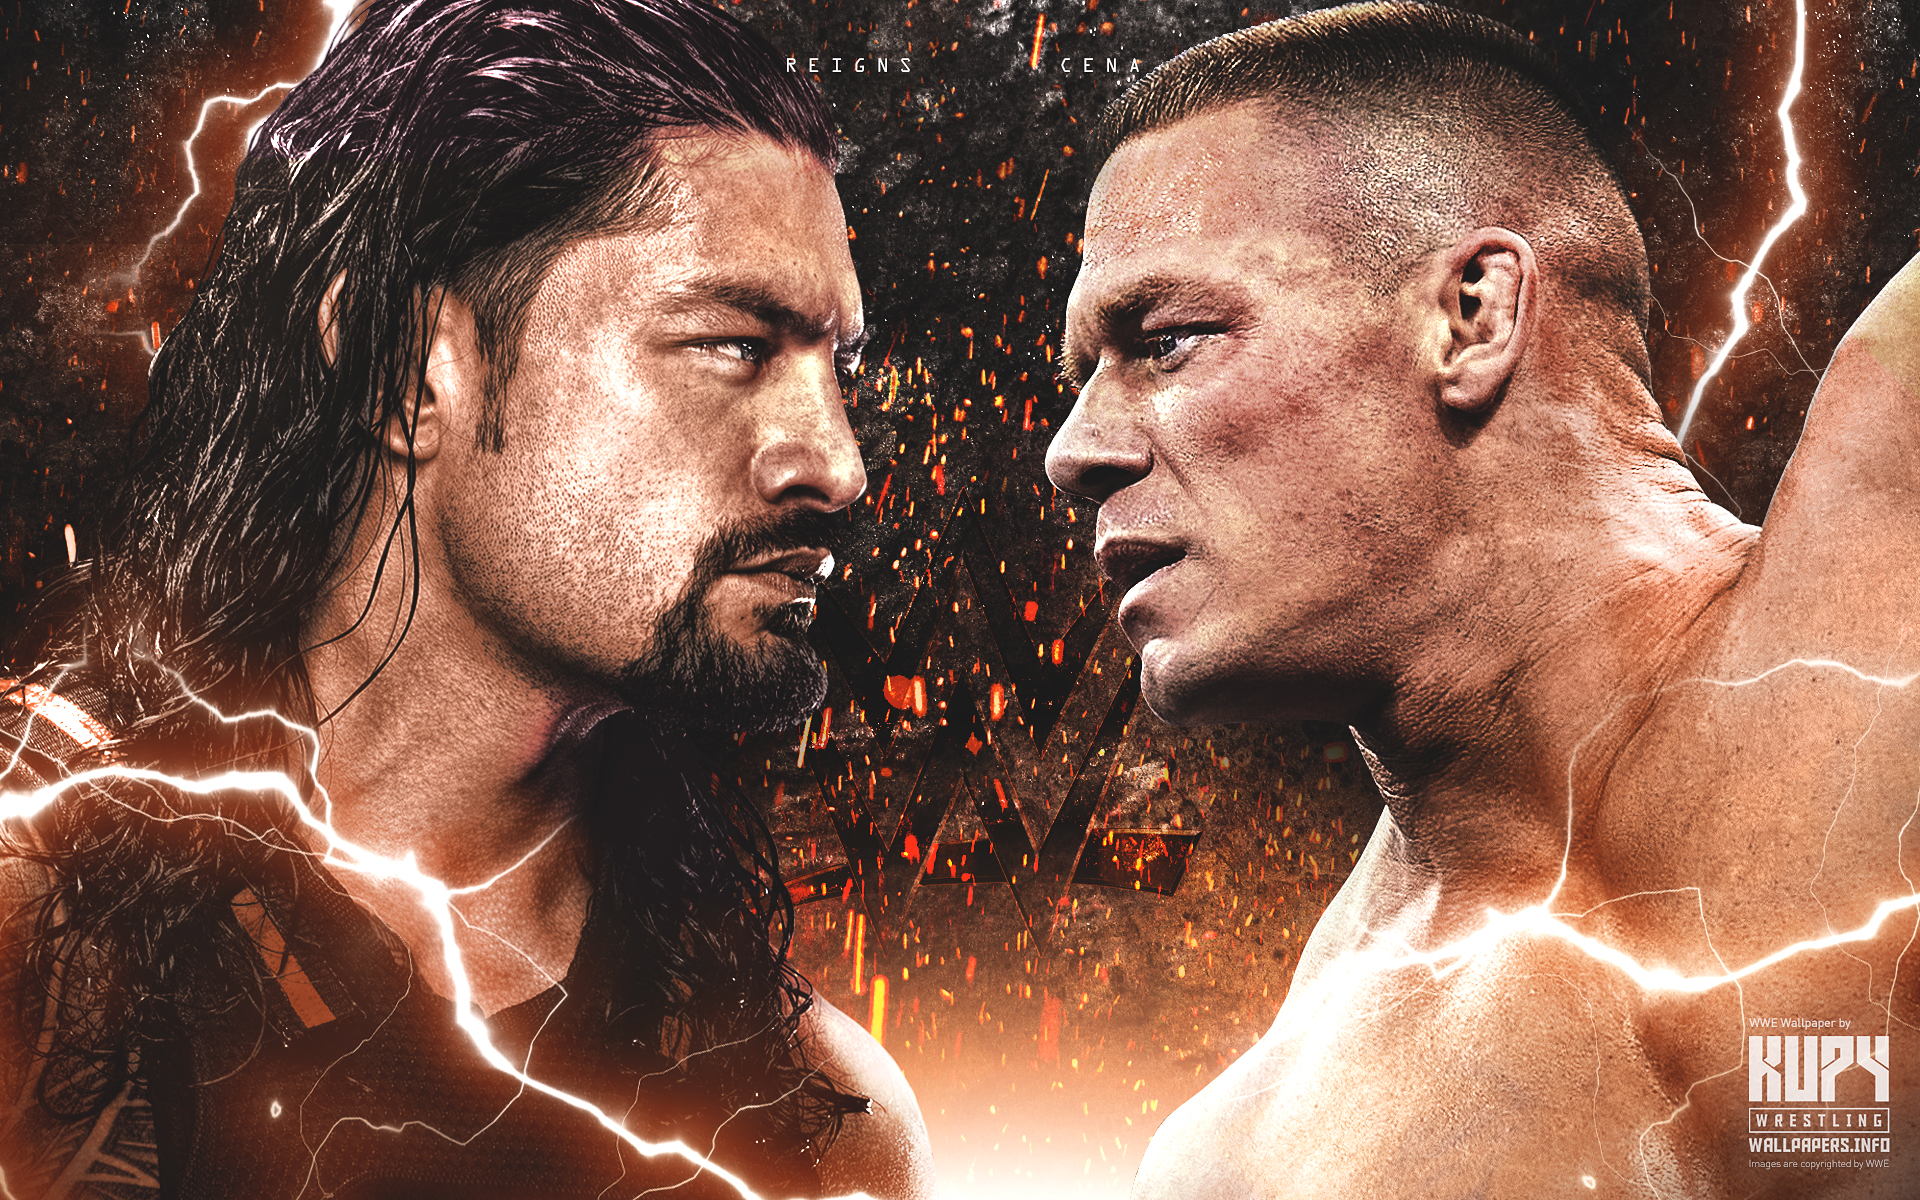 NEW Roman Reigns vs. John Cena wallpaper! - Kupy Wrestling Wallpapers